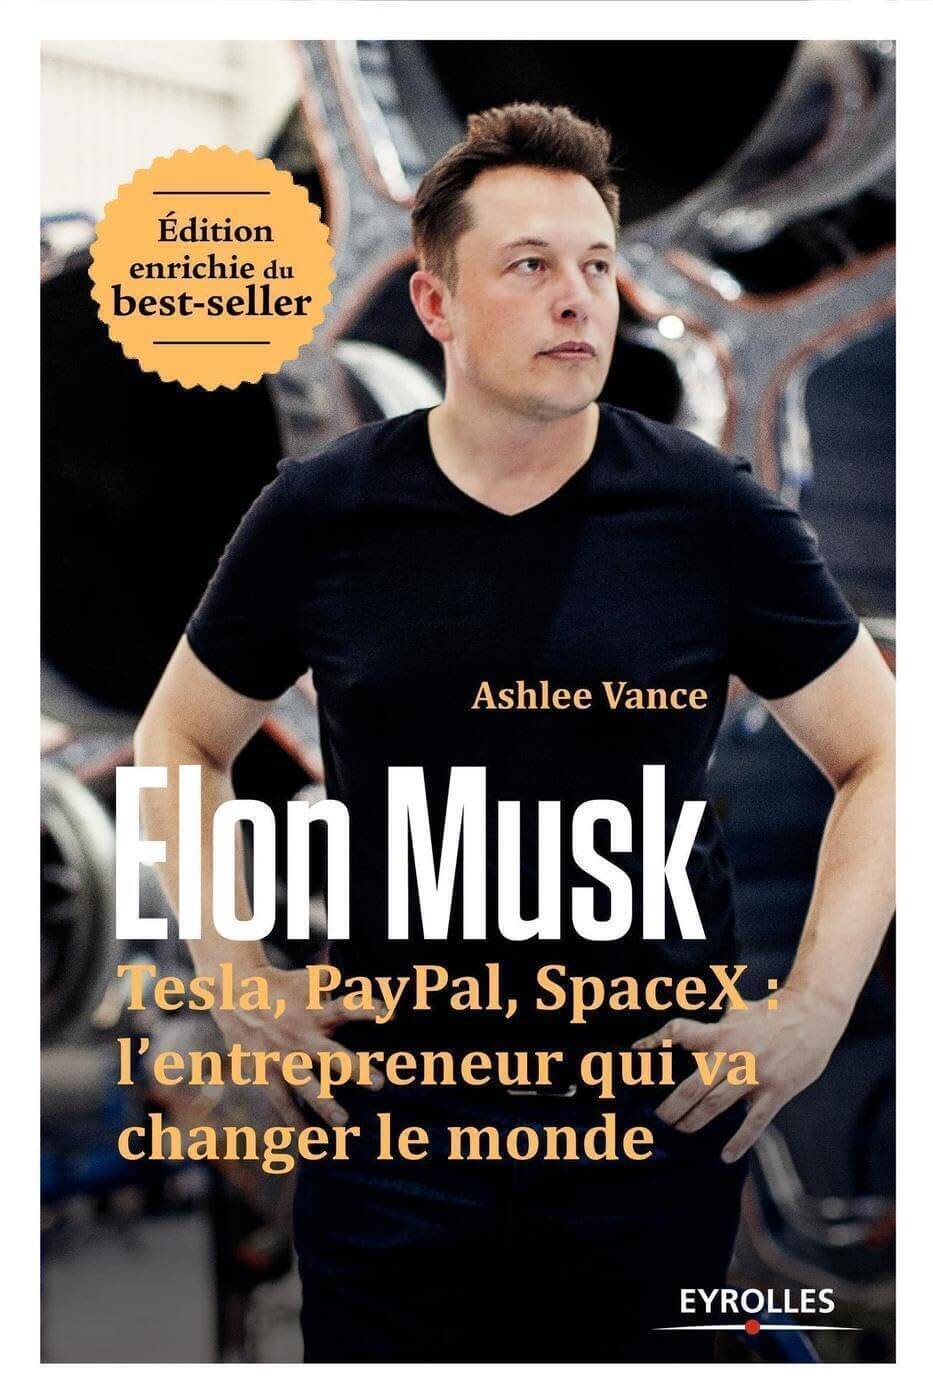 Combien de temps pour lire la biographie d'Elon Musk ?